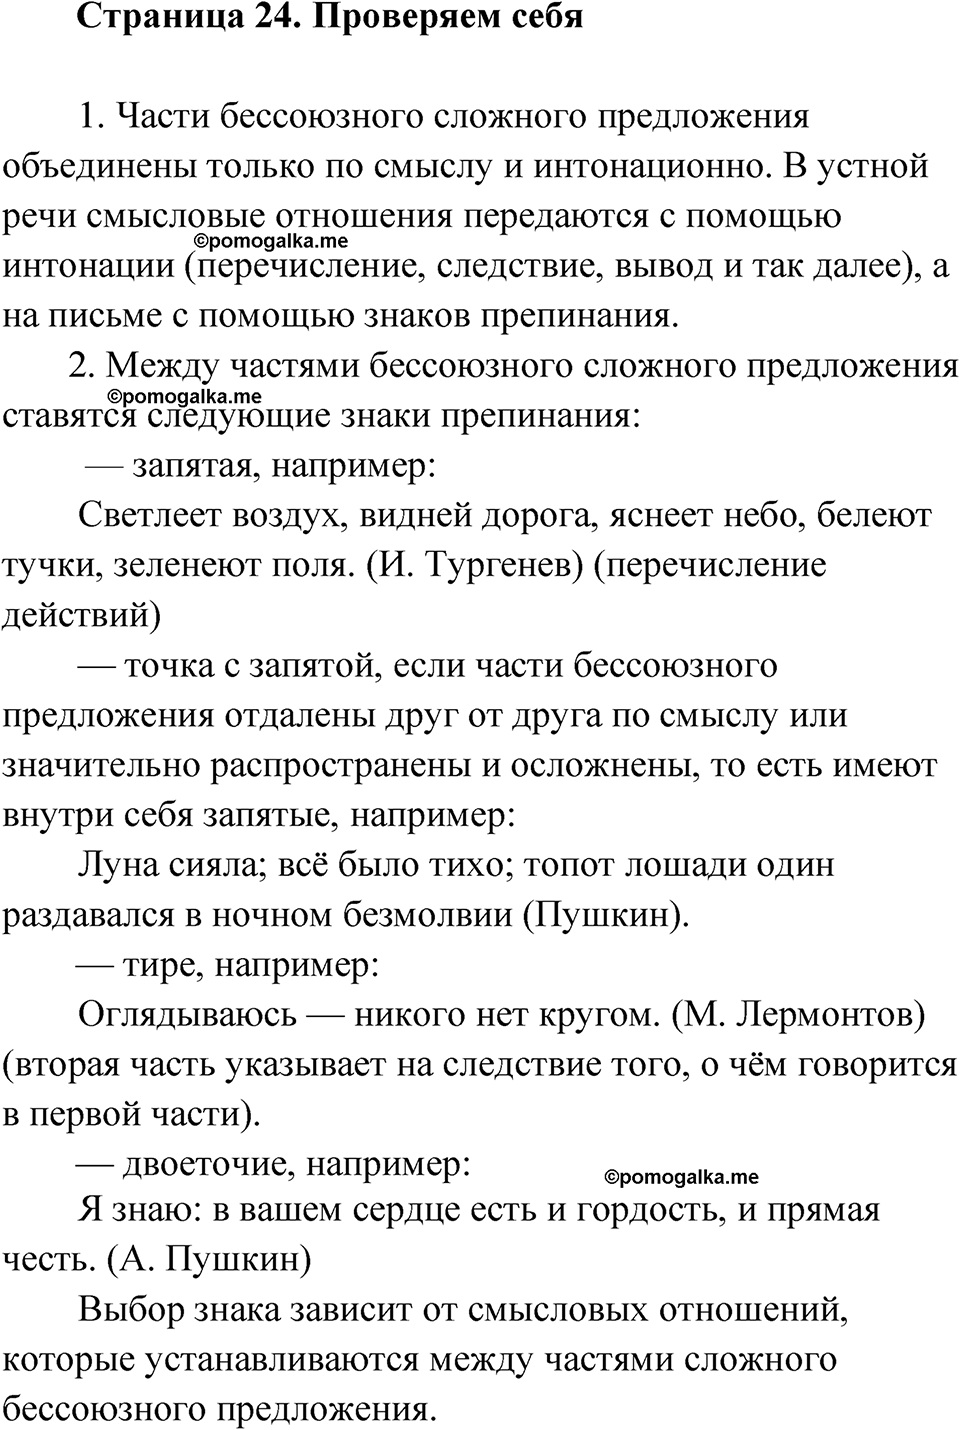 страница 24 Проверяем себя русский язык 9 класс Быстрова 2 часть 2022 год